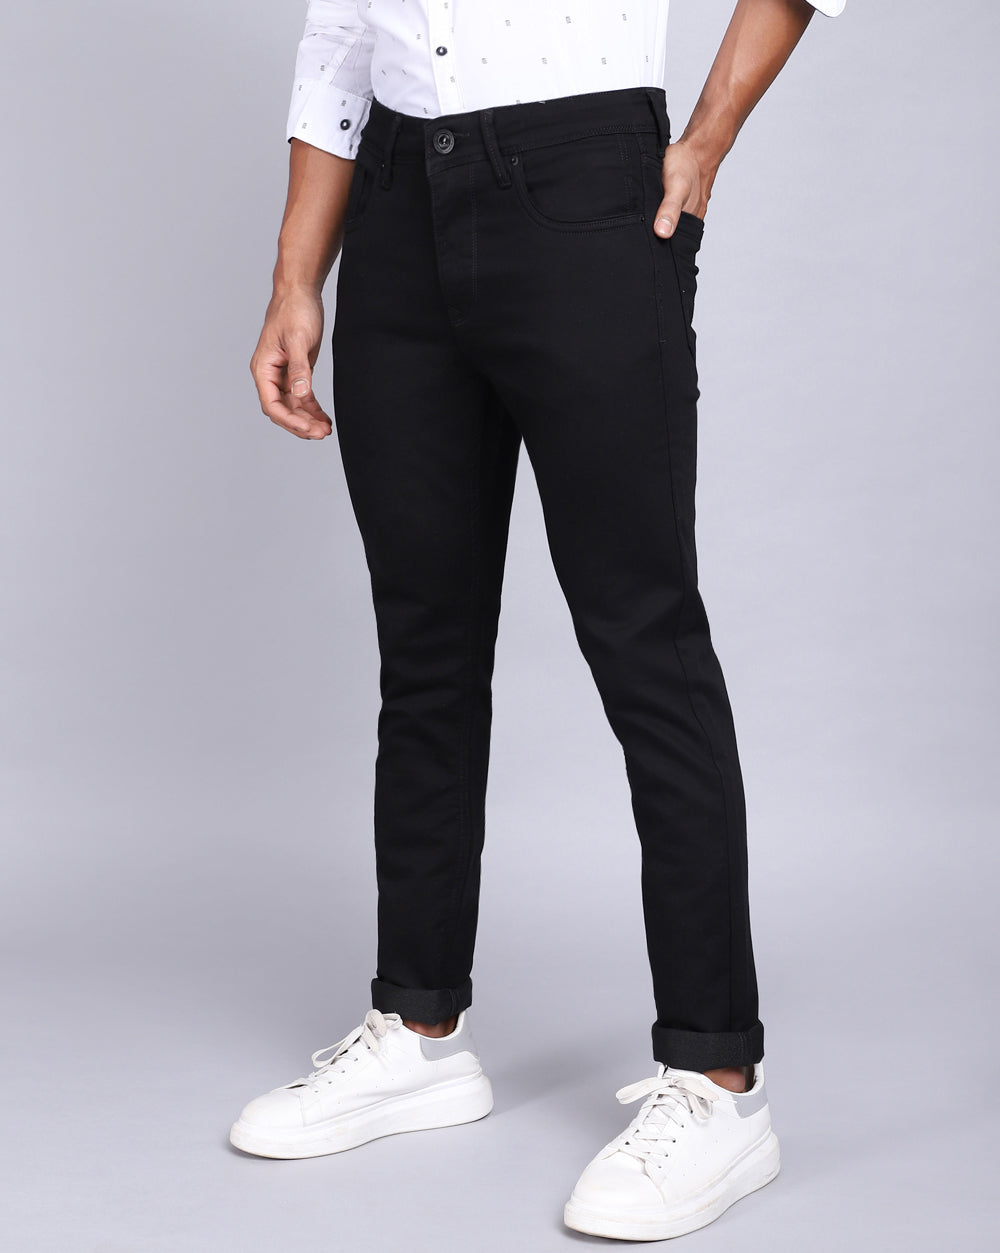 Buy Stylish Jet Black Mens Slim Jeans Online in India – Rockstar Jeans